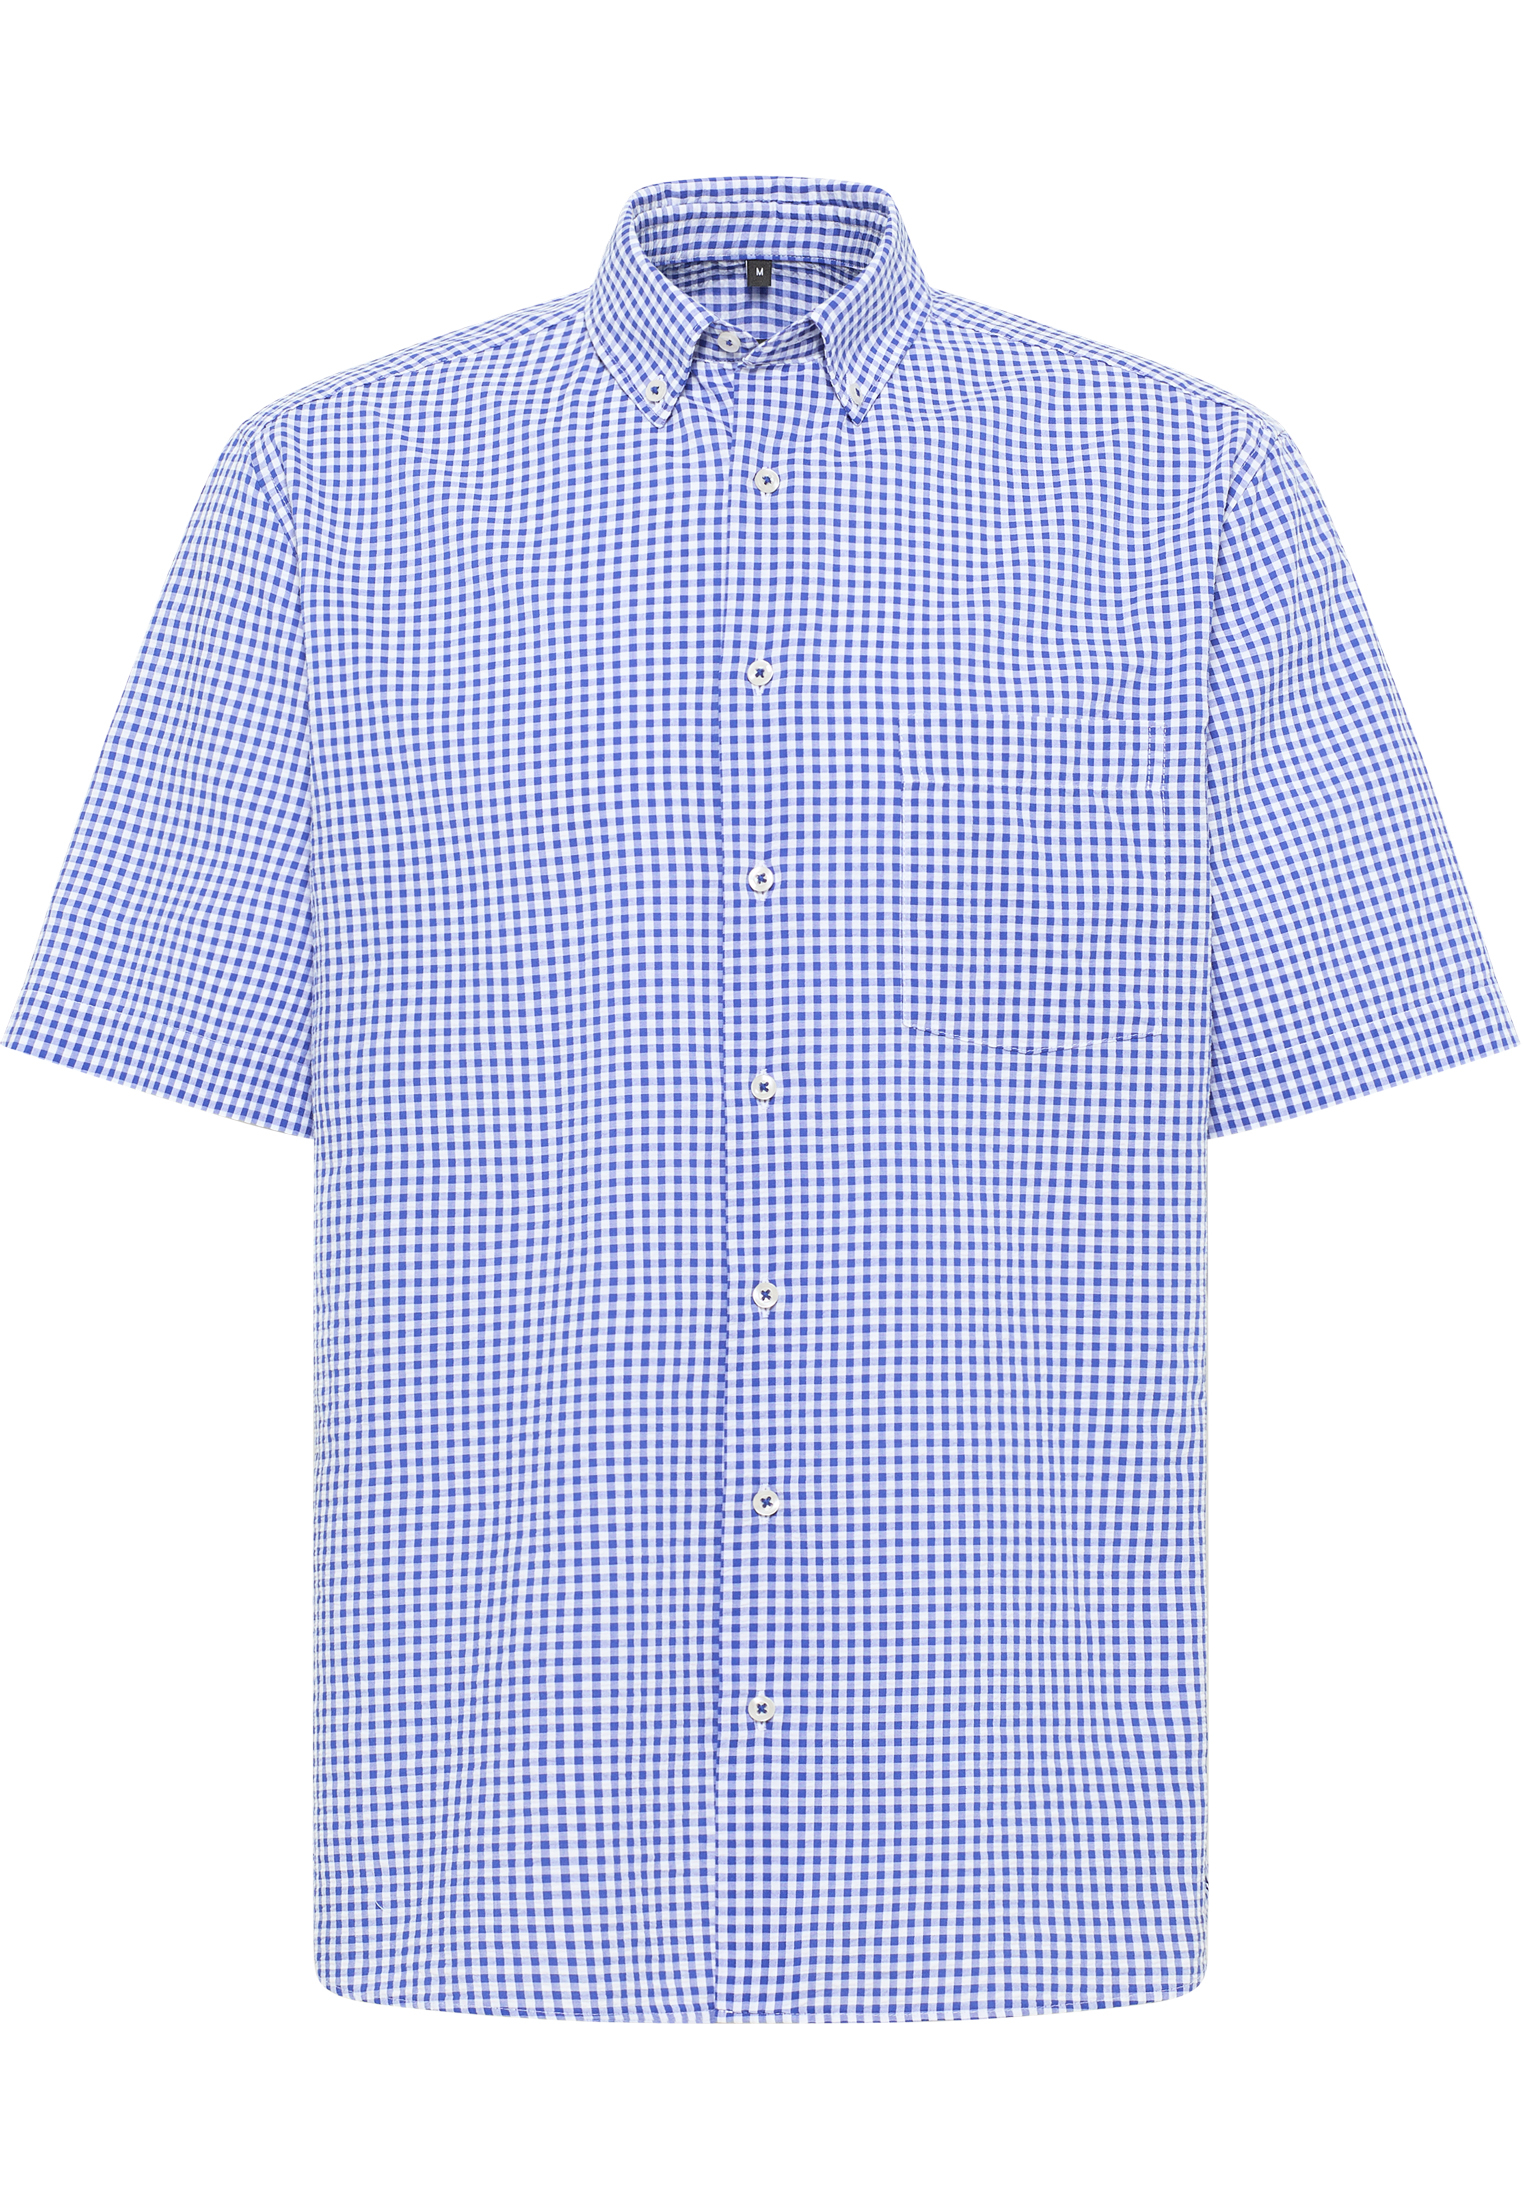 MODERN FIT Overhemd in blauw geruit